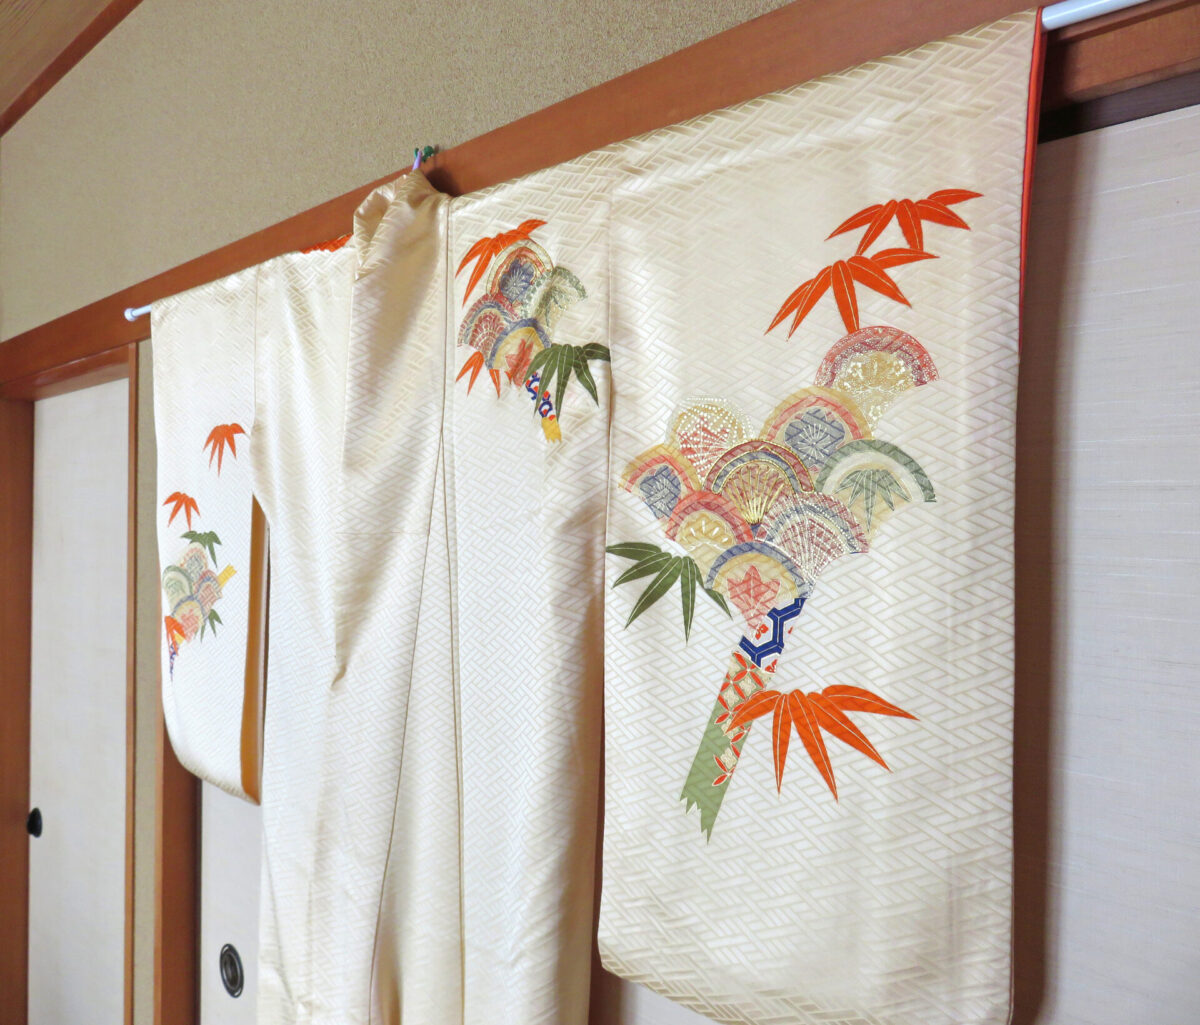 Kimono with ougi fan pattern